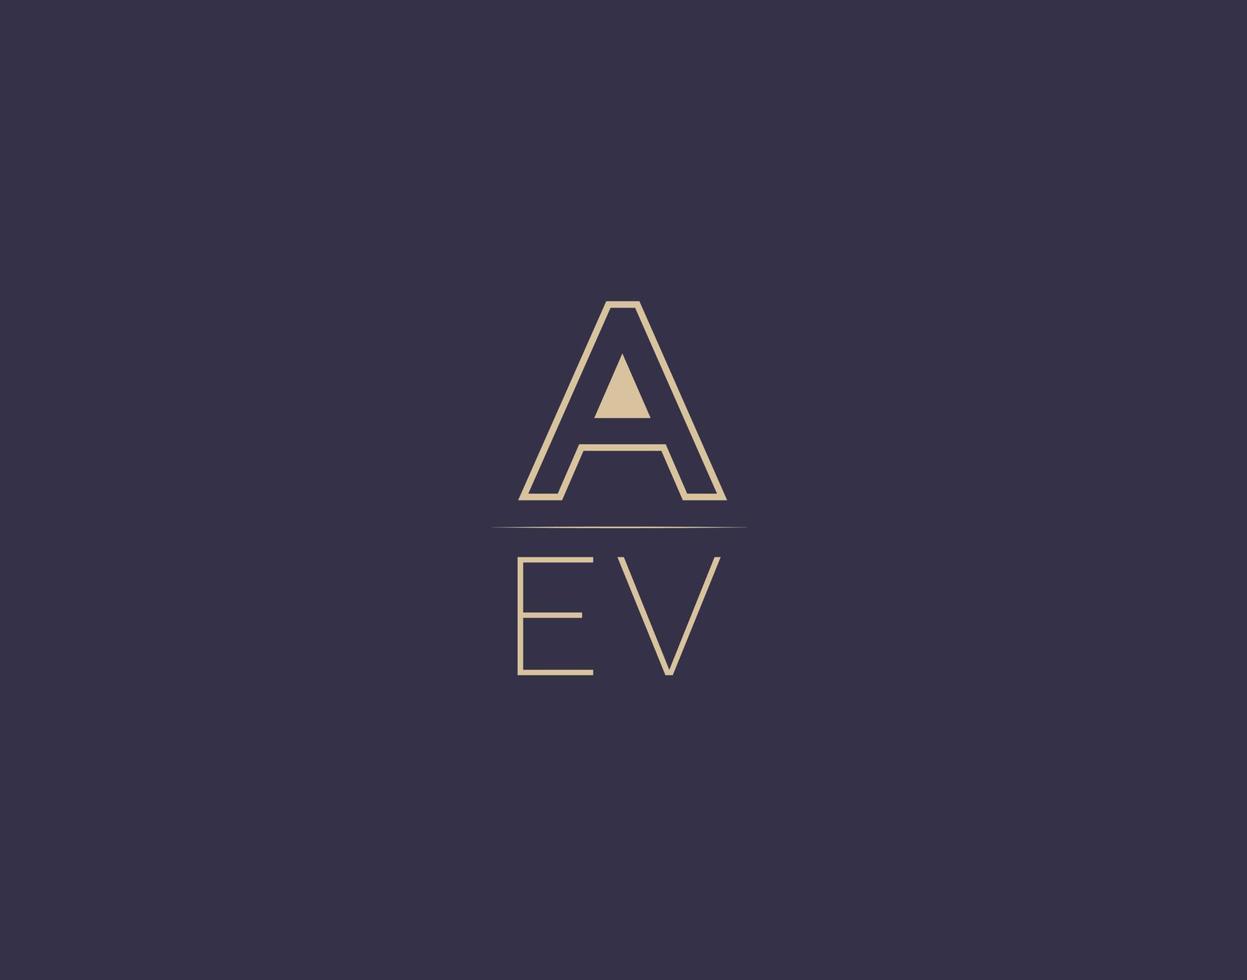 aev lettre logo design images vectorielles minimalistes modernes vecteur